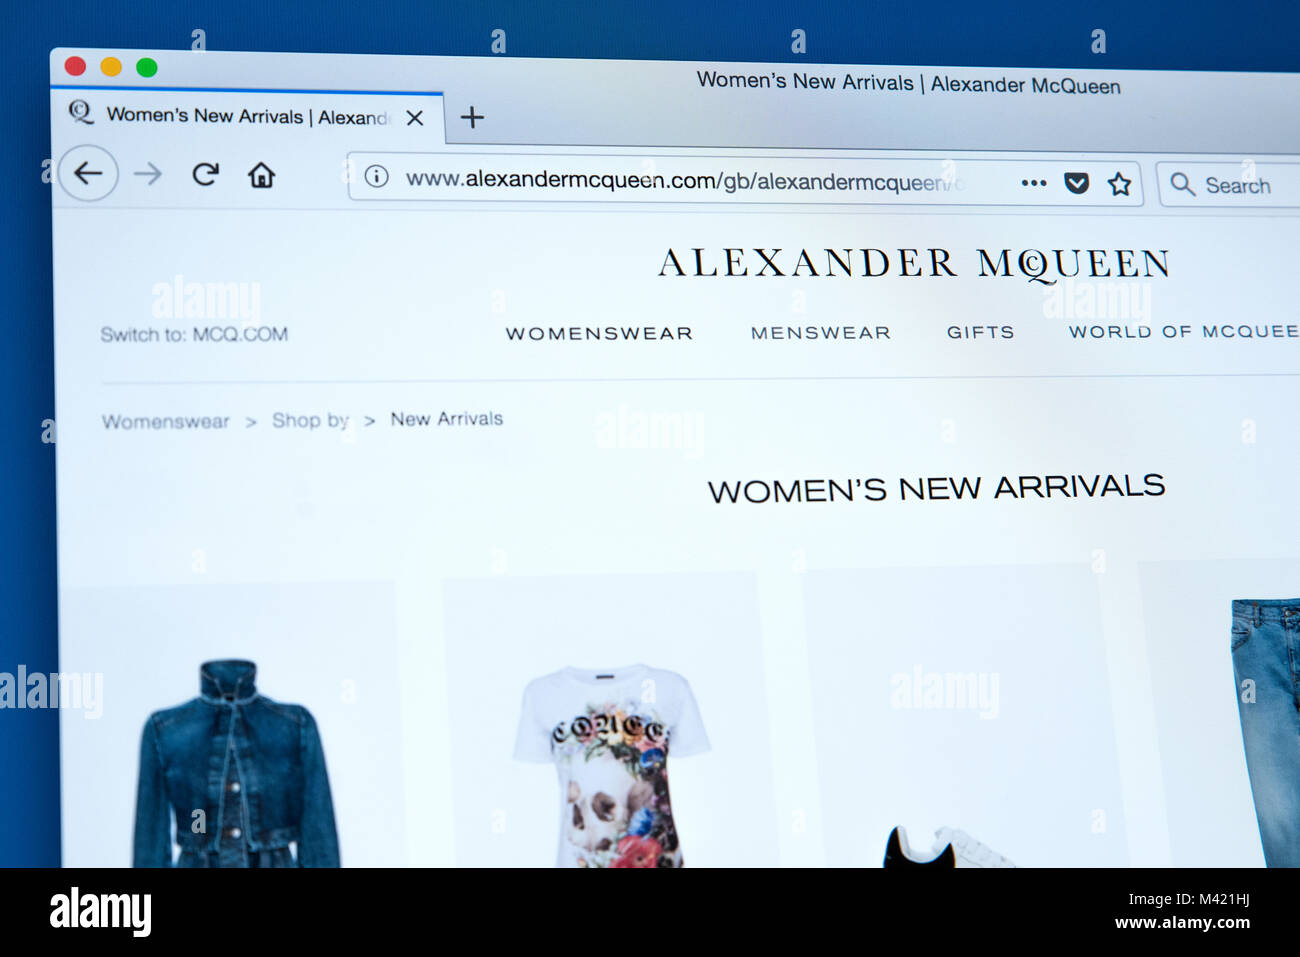 alexander mcqueen uk website